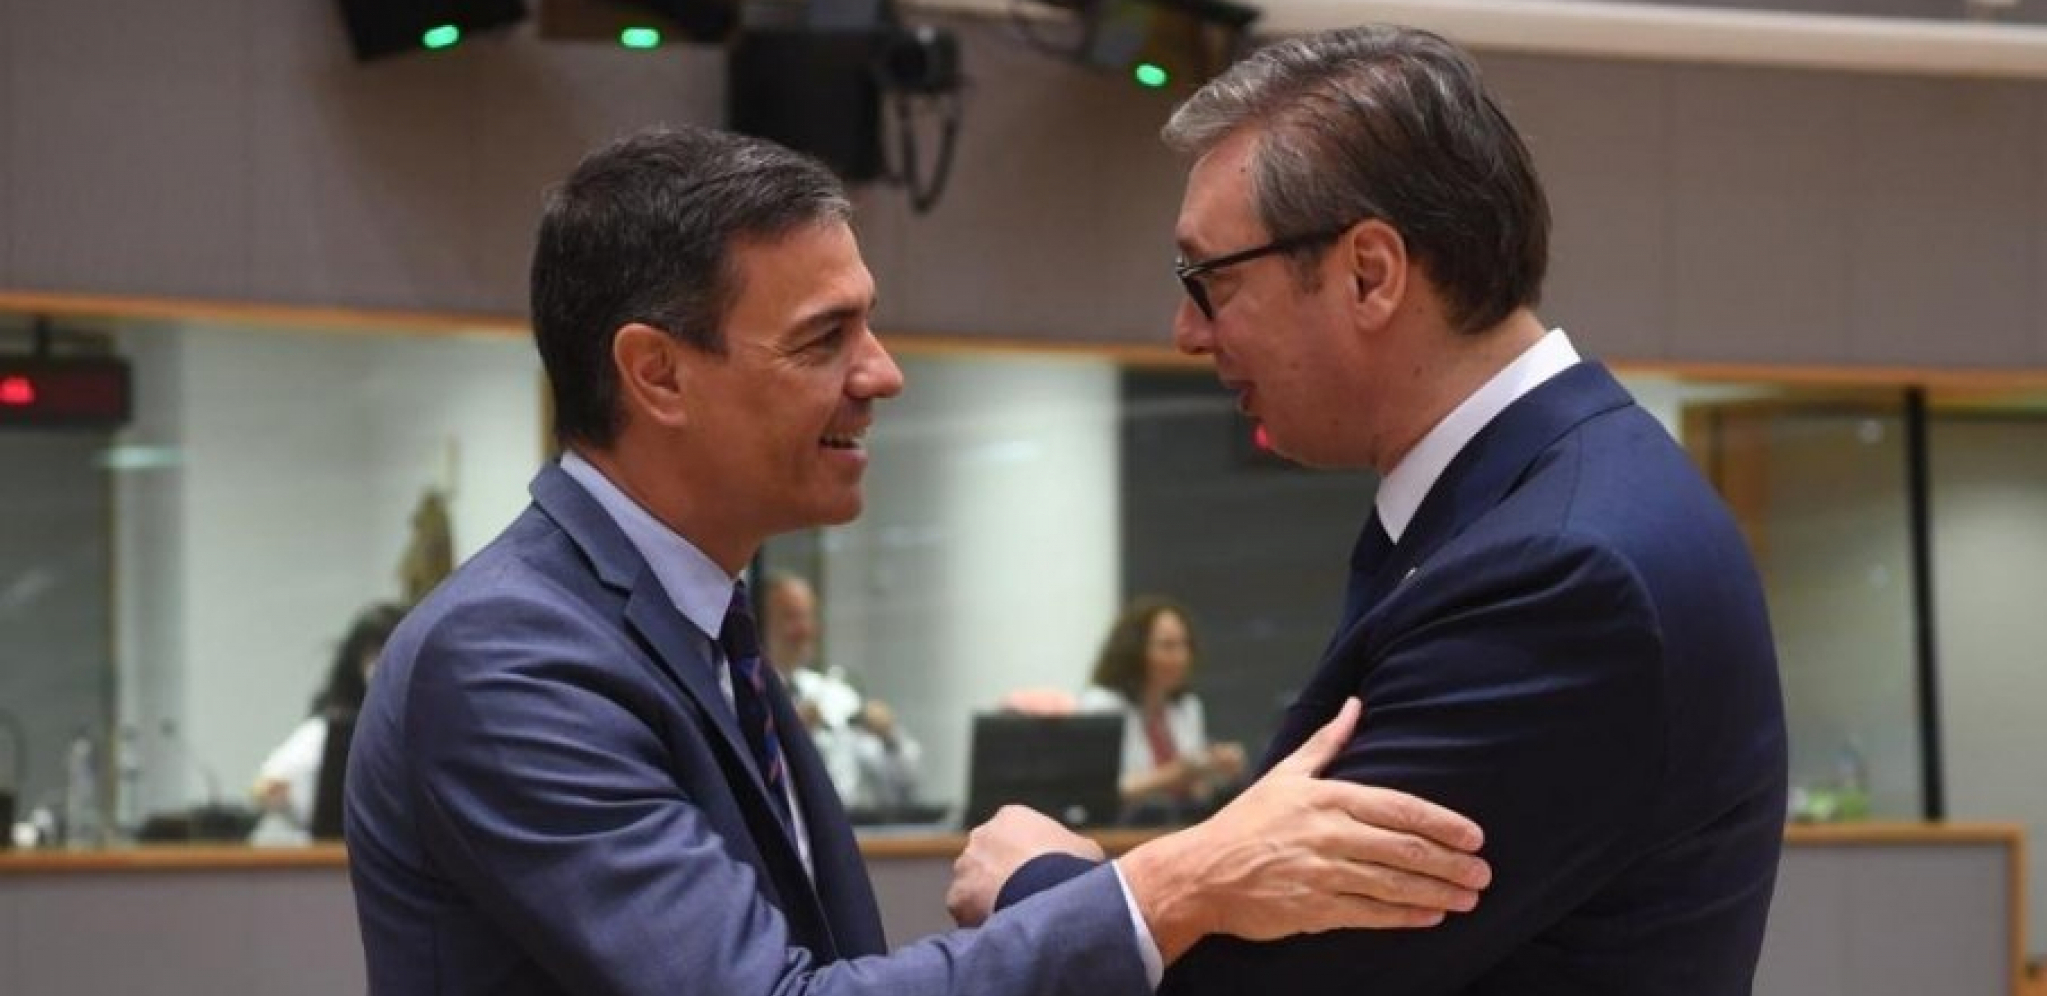 ŠPANSKI PREMIJER PRVI PUT U POSETI SRBIJI Sančeza će ugostiti predsednik Aleksandar Vučić (FOTO)